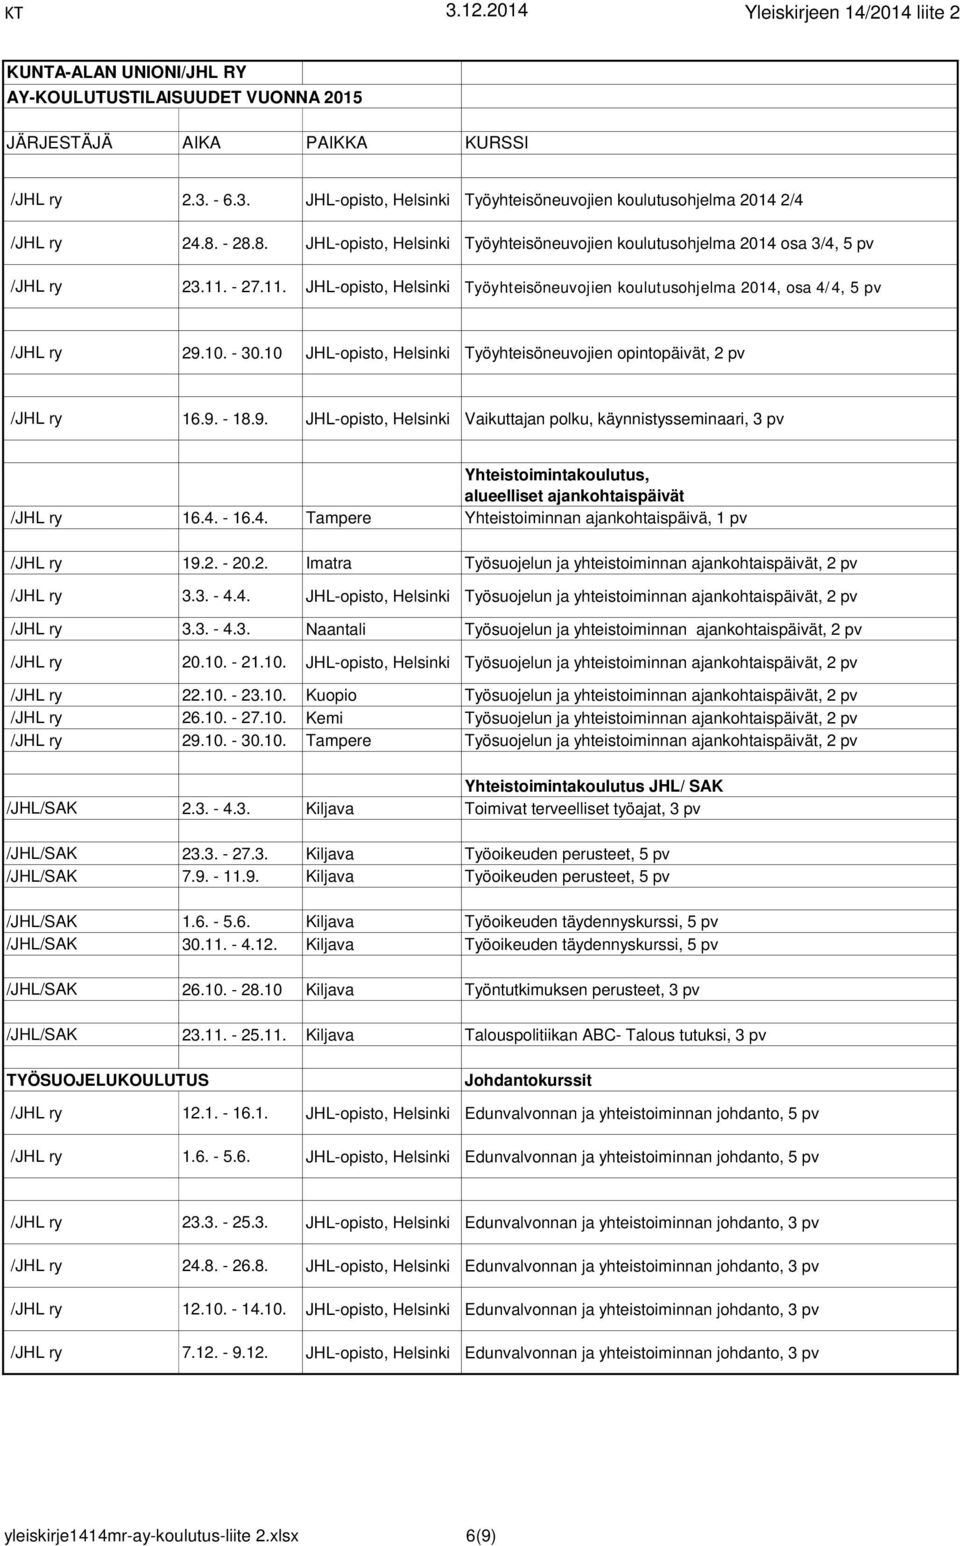 4. - 16.4. Tampere Yhteistoiminnan ajankohtaispäivä, 1 pv /JHL ry 19.2. - 20.2. Imatra Työsuojelun ja yhteistoiminnan ajankohtaispäivät, 2 pv /JHL ry 3.